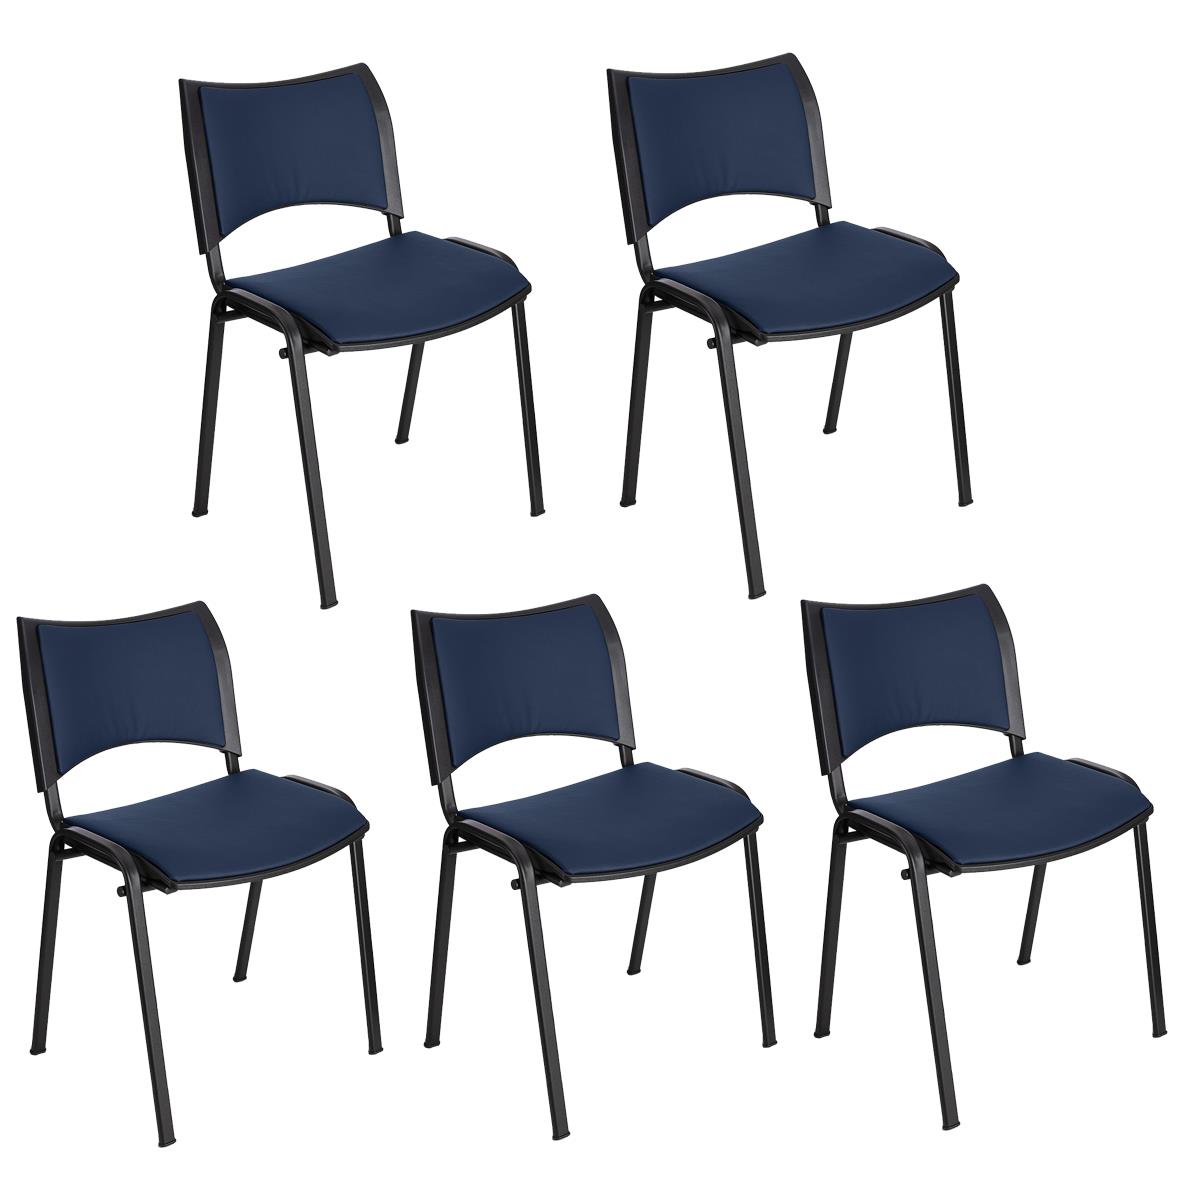 Lote 5 Cadeiras de Visita ROMEL PELE, Prática e Empilhável, Pernas Pretas, Azul